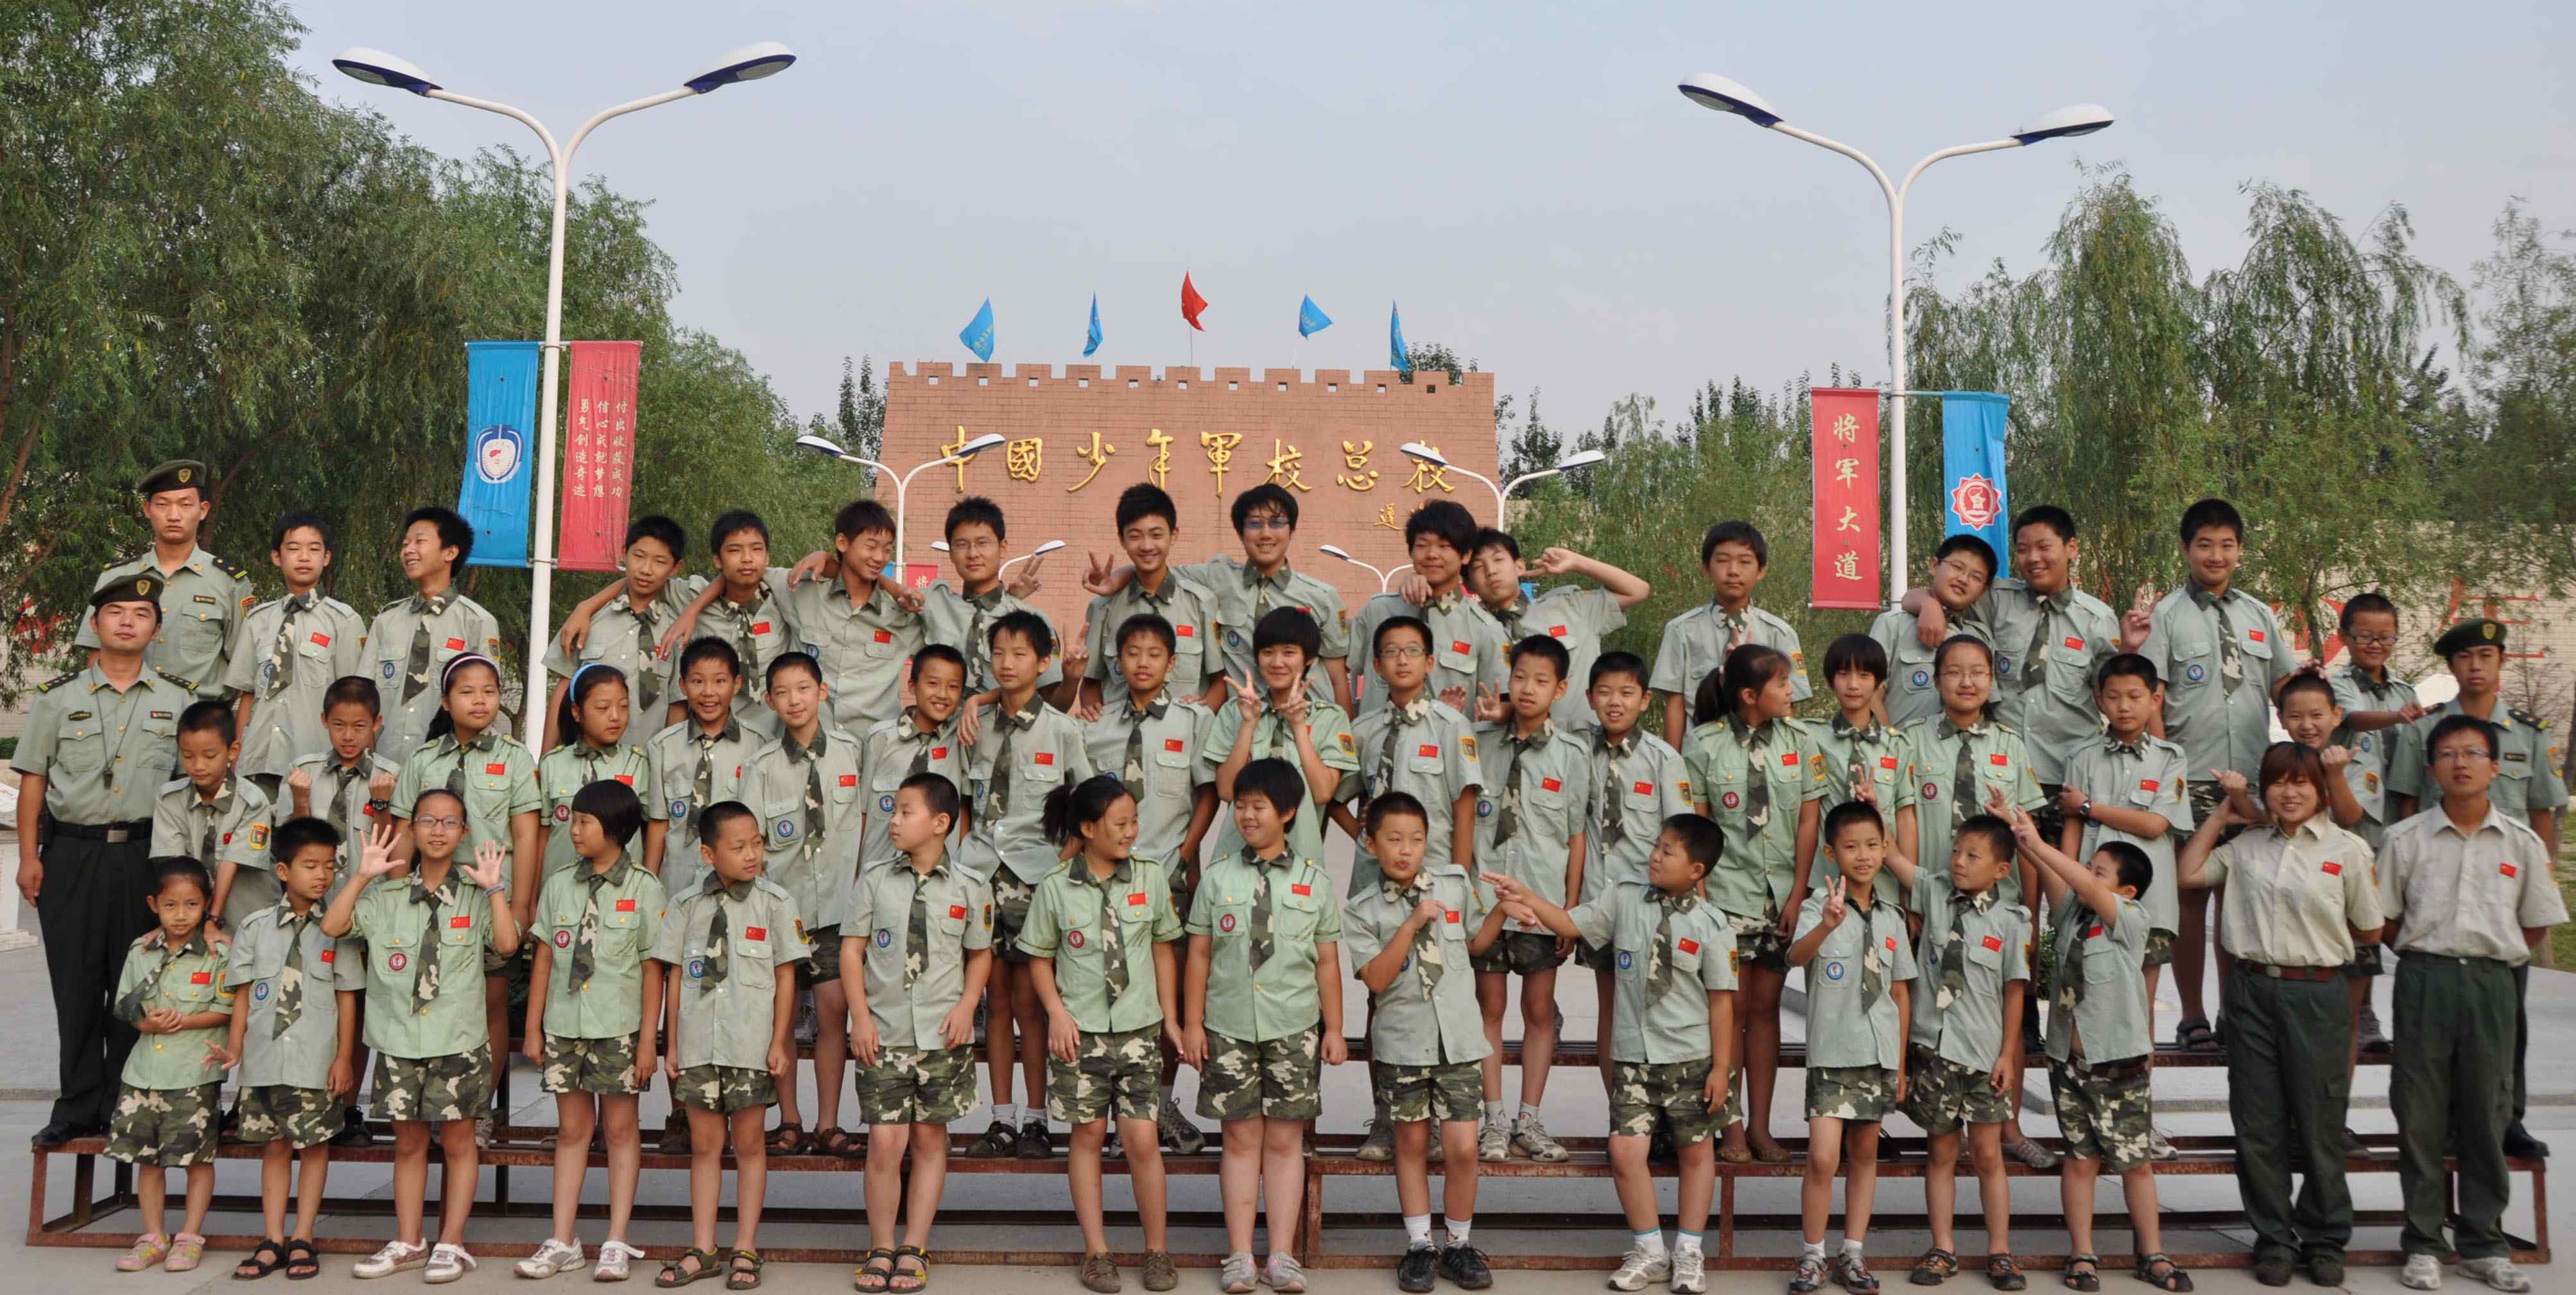 中国少年军校 中国少年军校联盟总部基地2018年北京军事夏令营